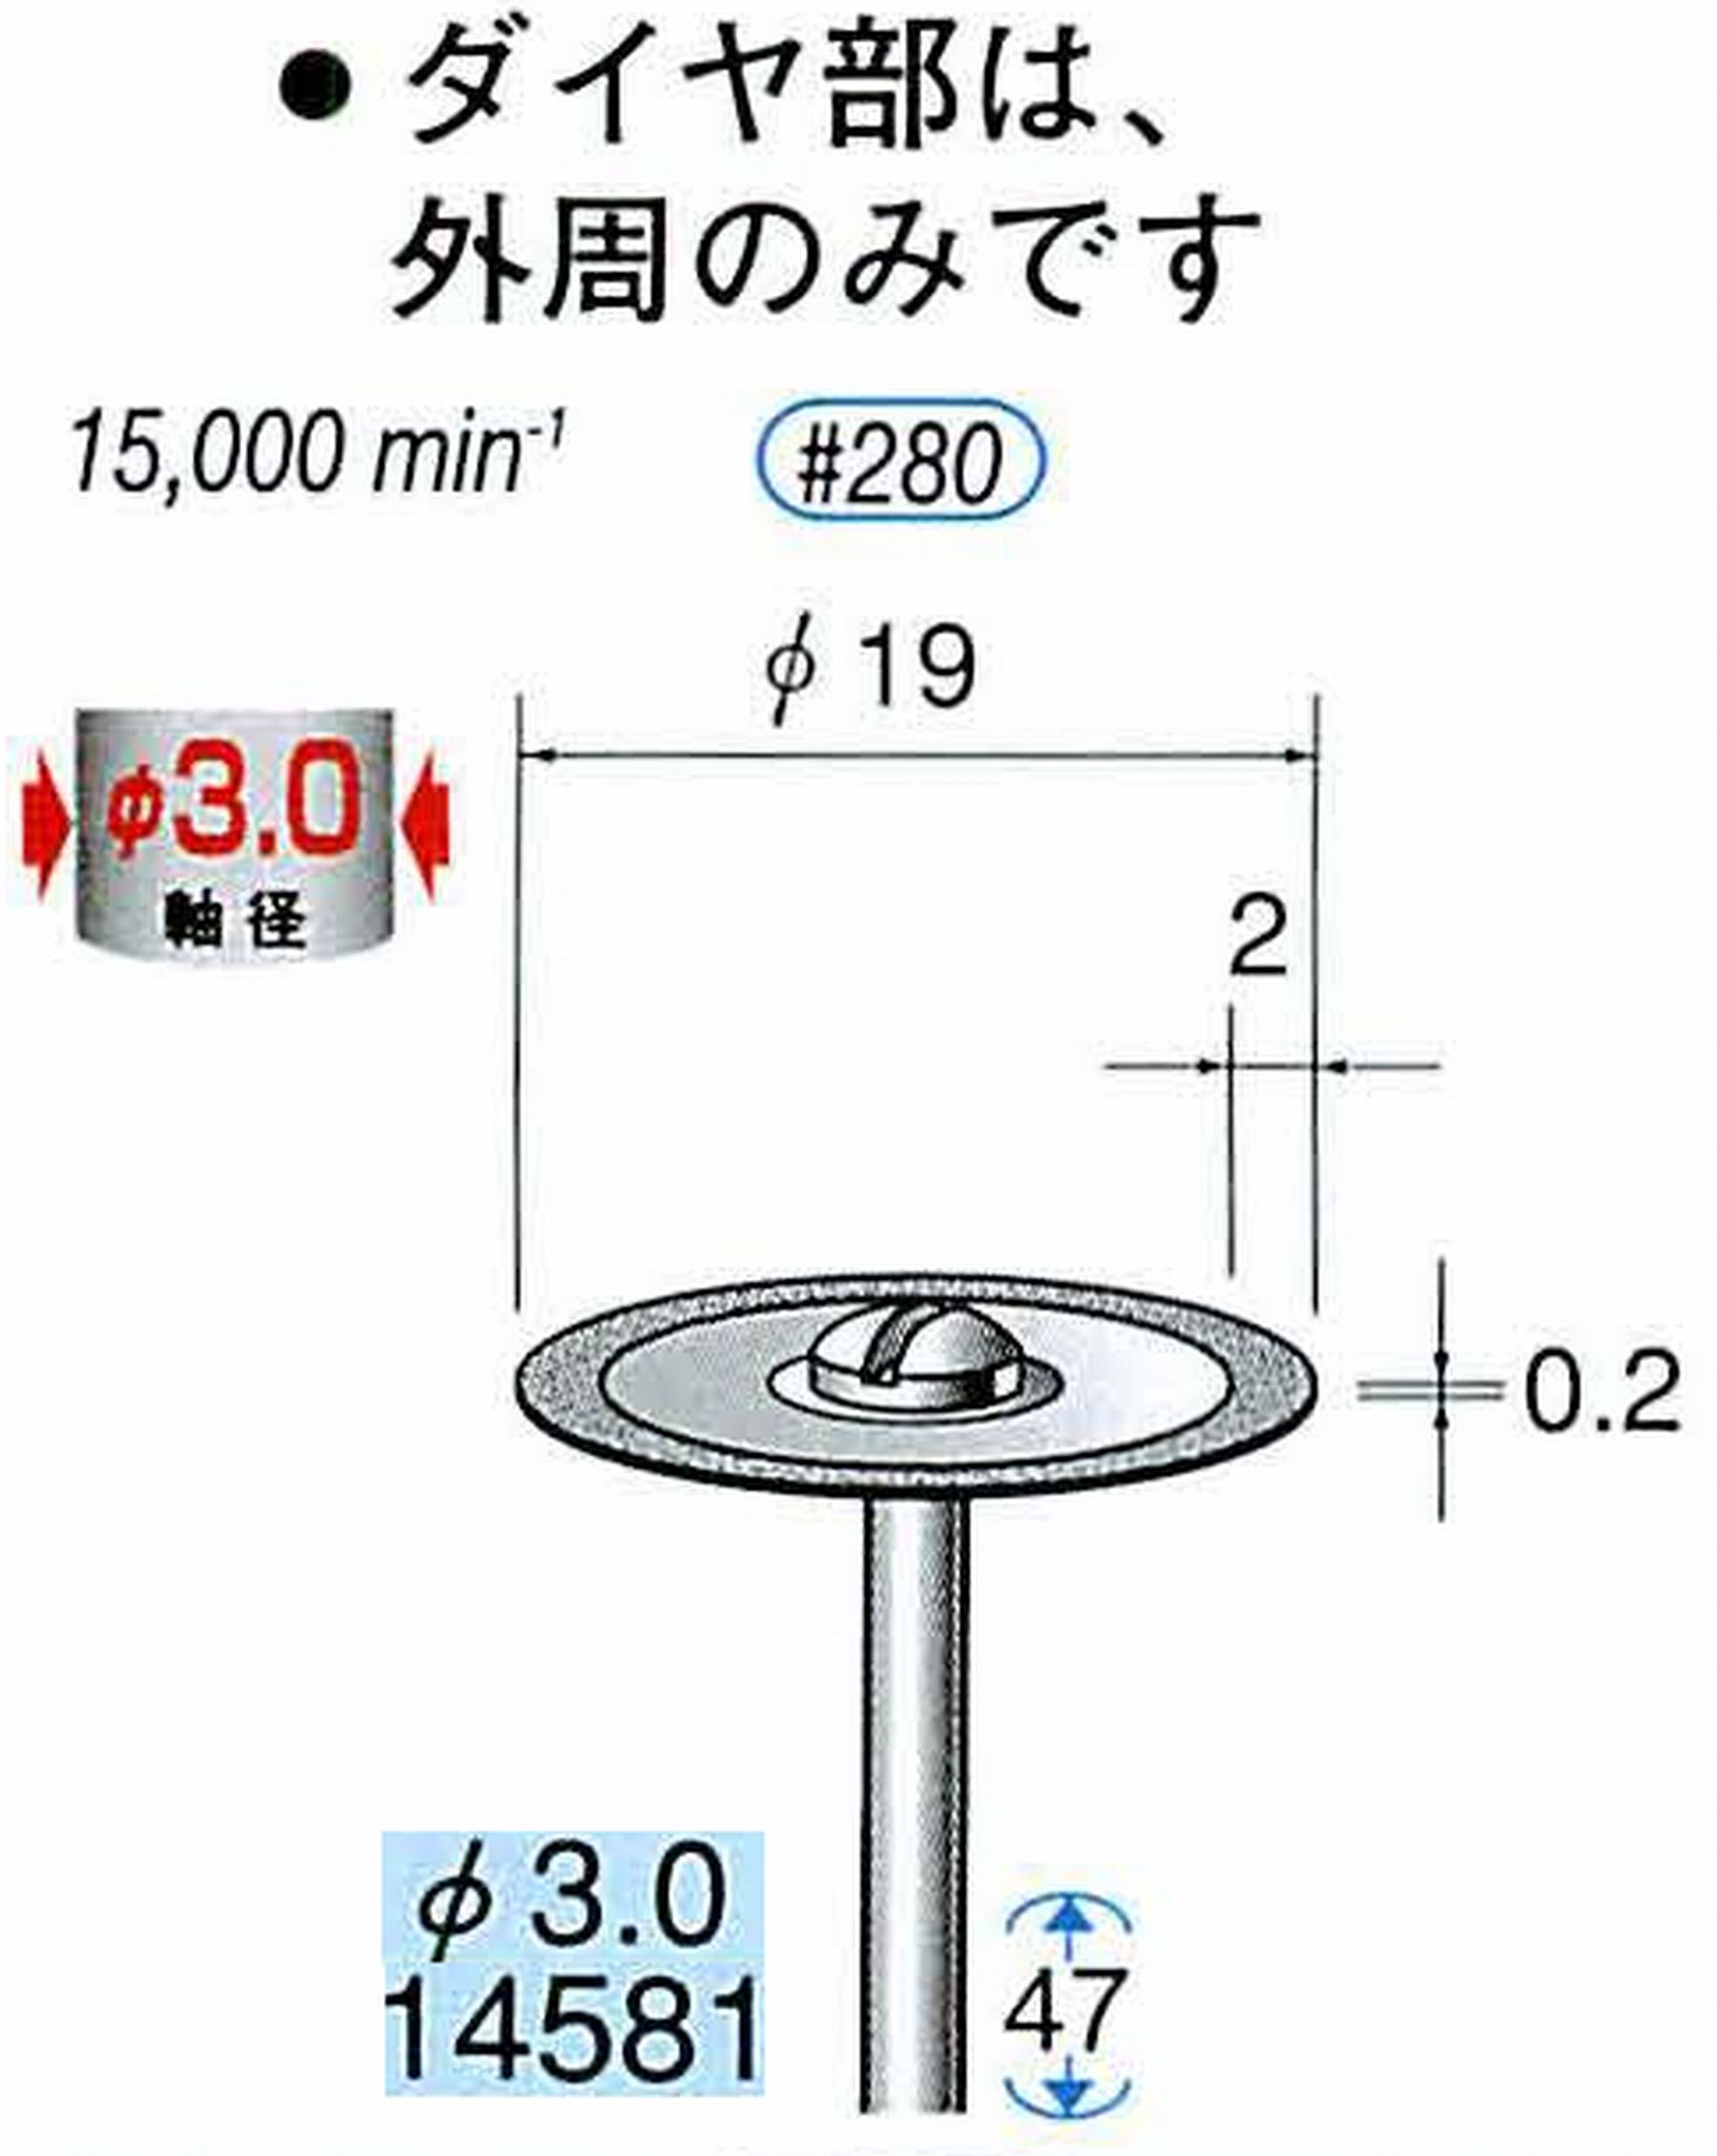 ナカニシ/NAKANISHI ダイヤモンドカッティングディスク メタルボンドタイプ 軸径(シャンク)φ3.0mm 14581